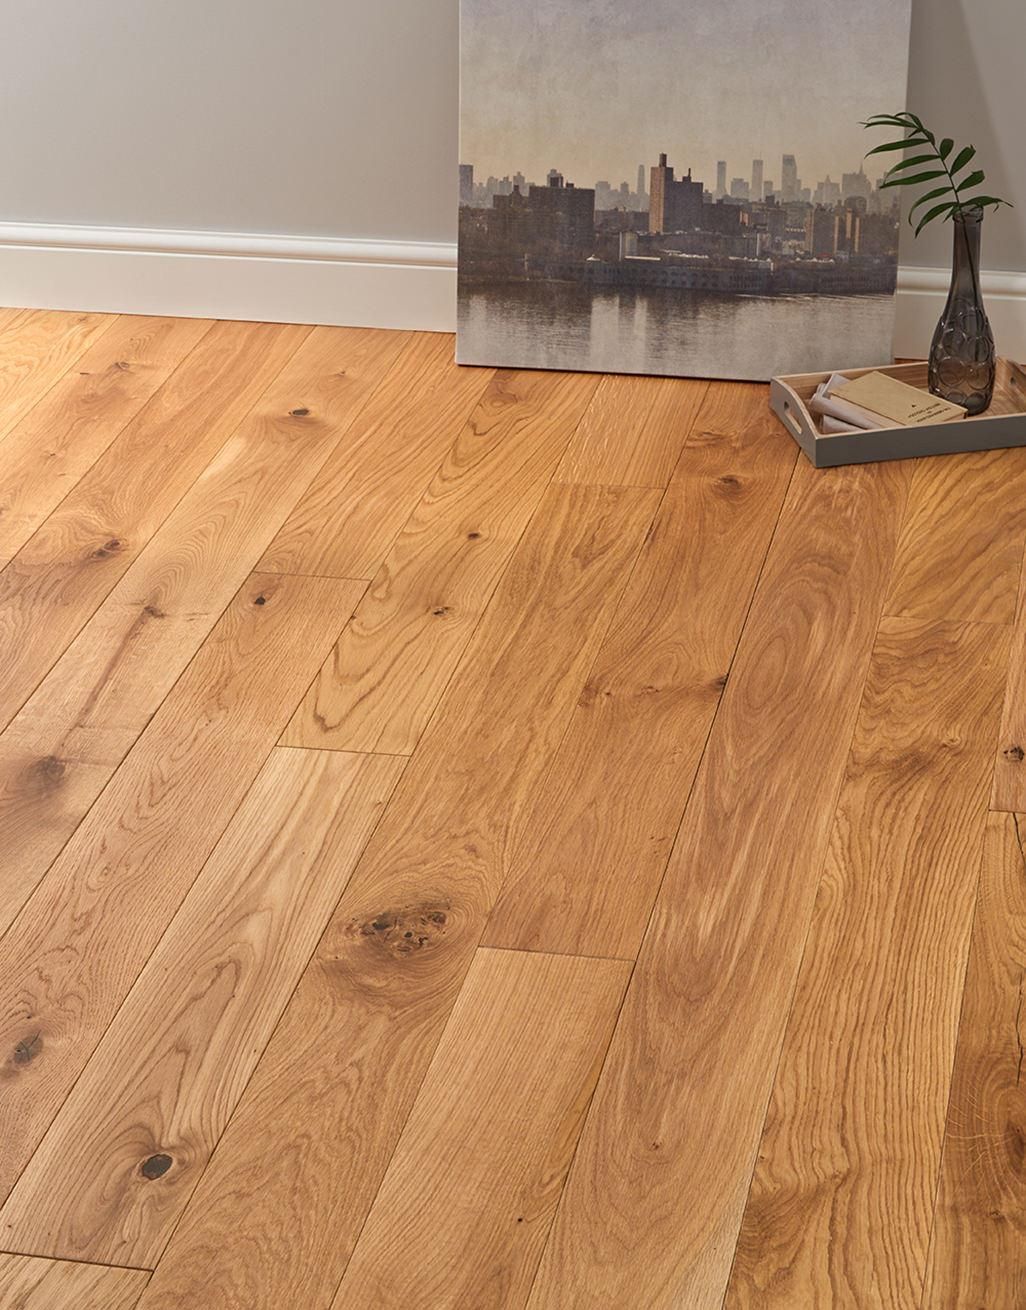 Deluxe Natural Oak Solid Wood Flooring, Real Wood Hardwood Floors